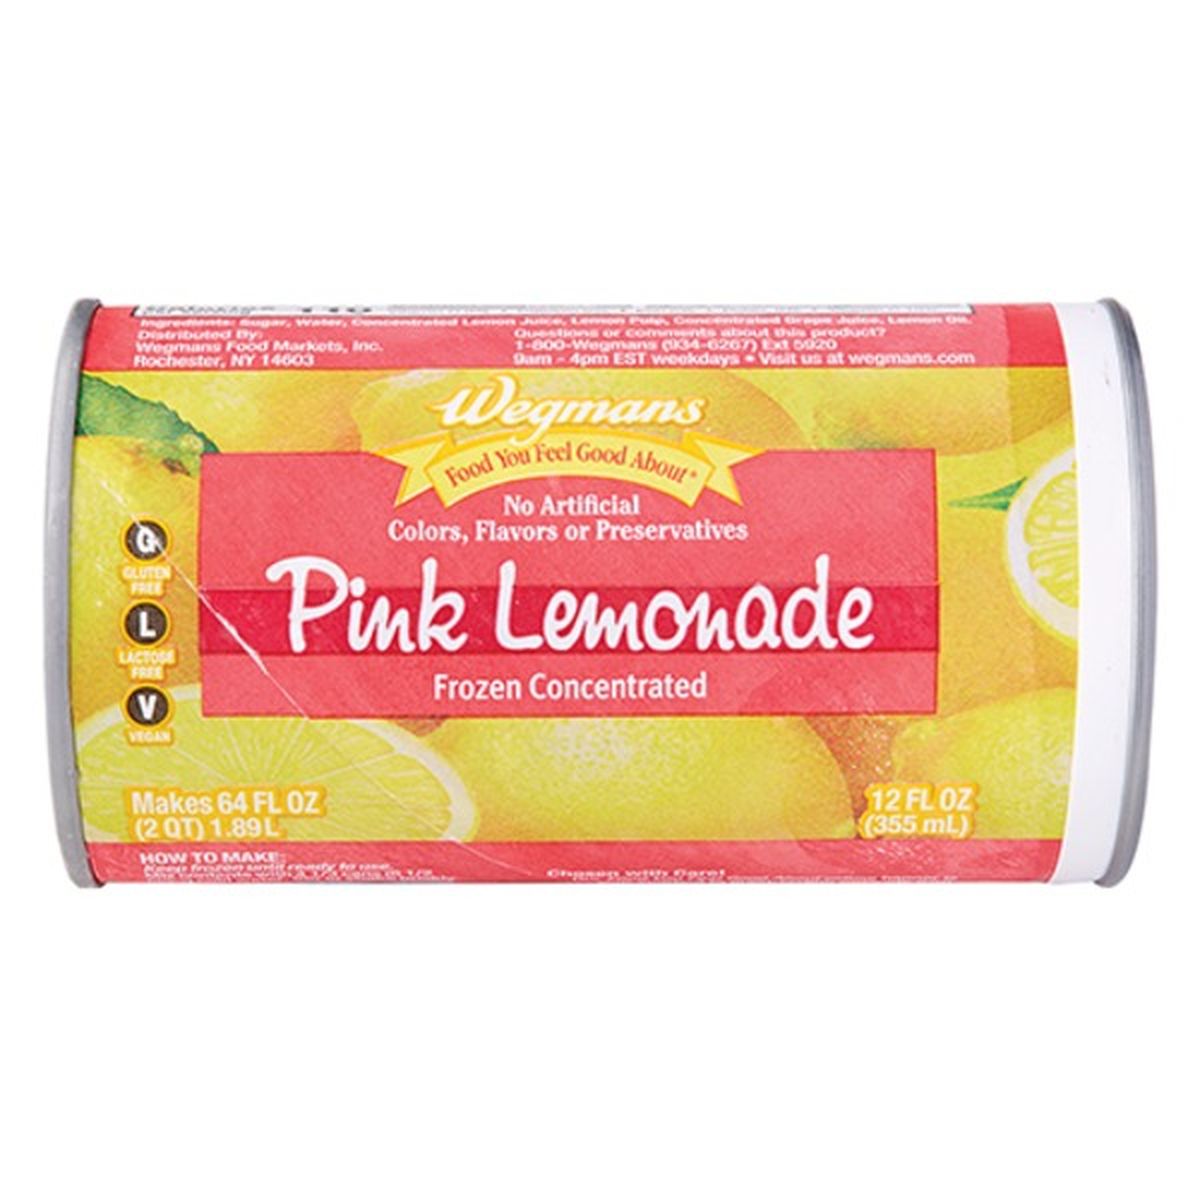 Calories in Wegmans Frozen Concentrated Pink Lemonade